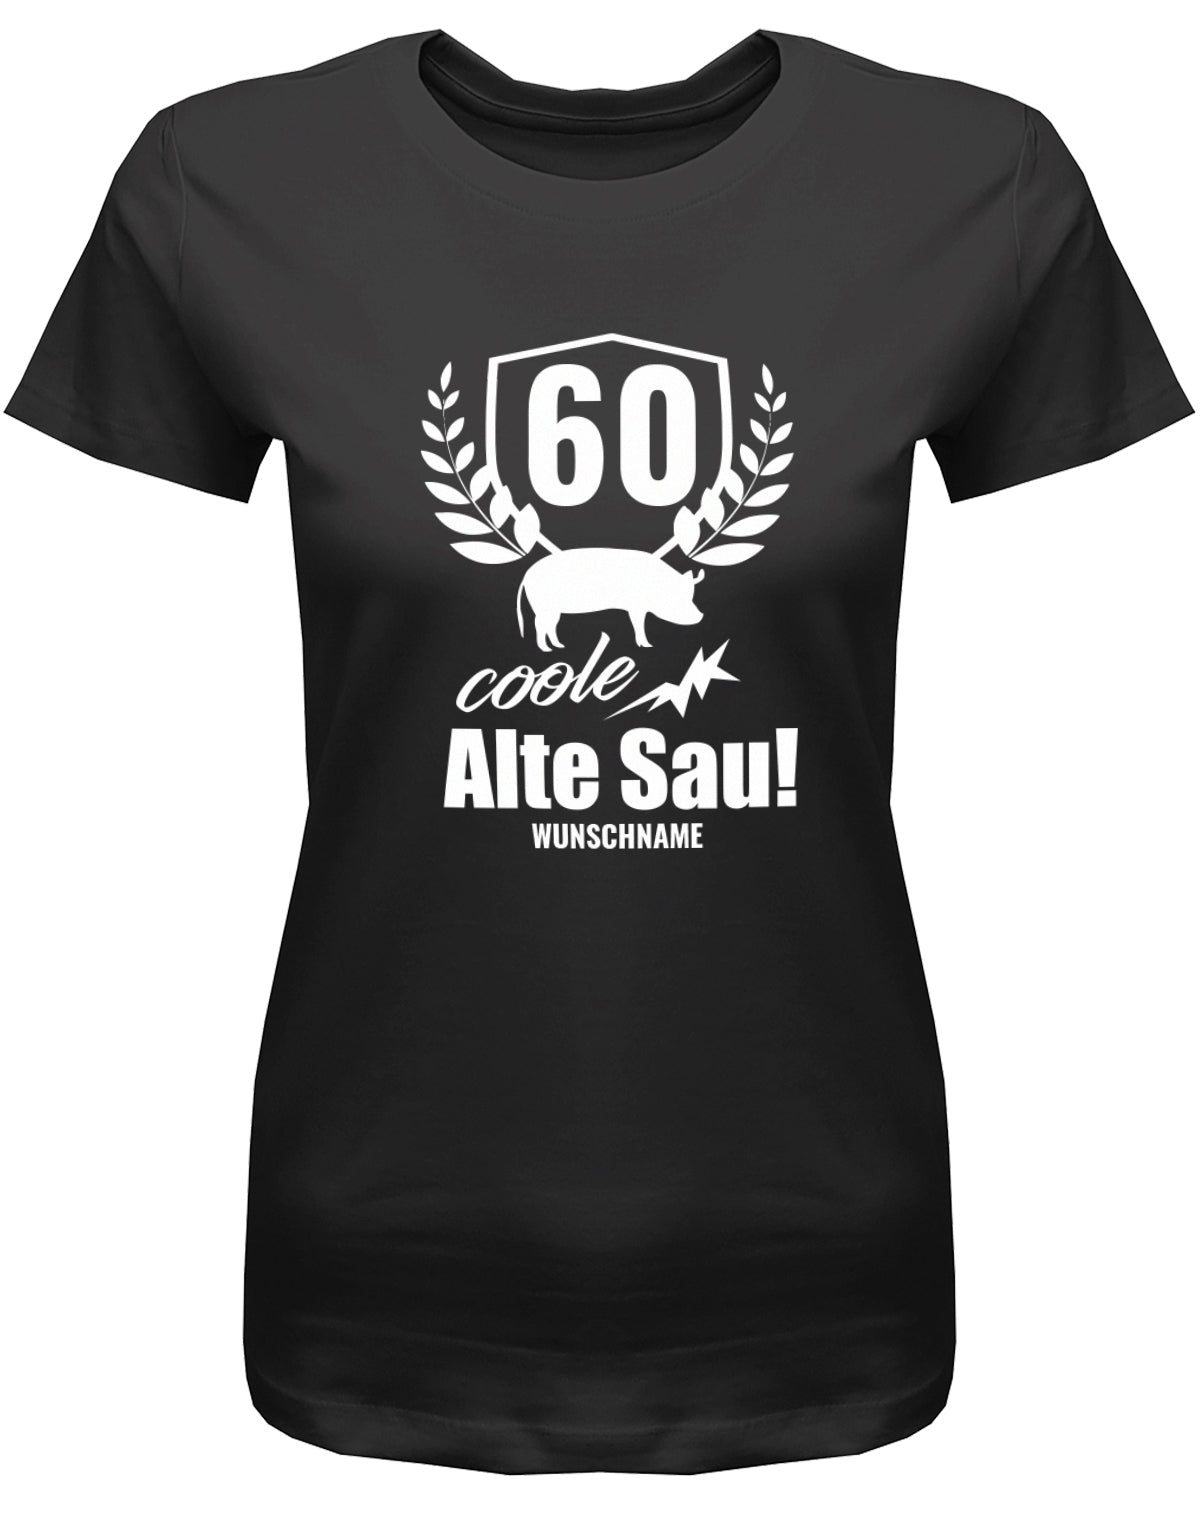 Lustiges T-Shirt zum 60 Geburtstag für die Frau Bedruckt mit 60 coole alte Sau personalisiert mit Name Schwarz